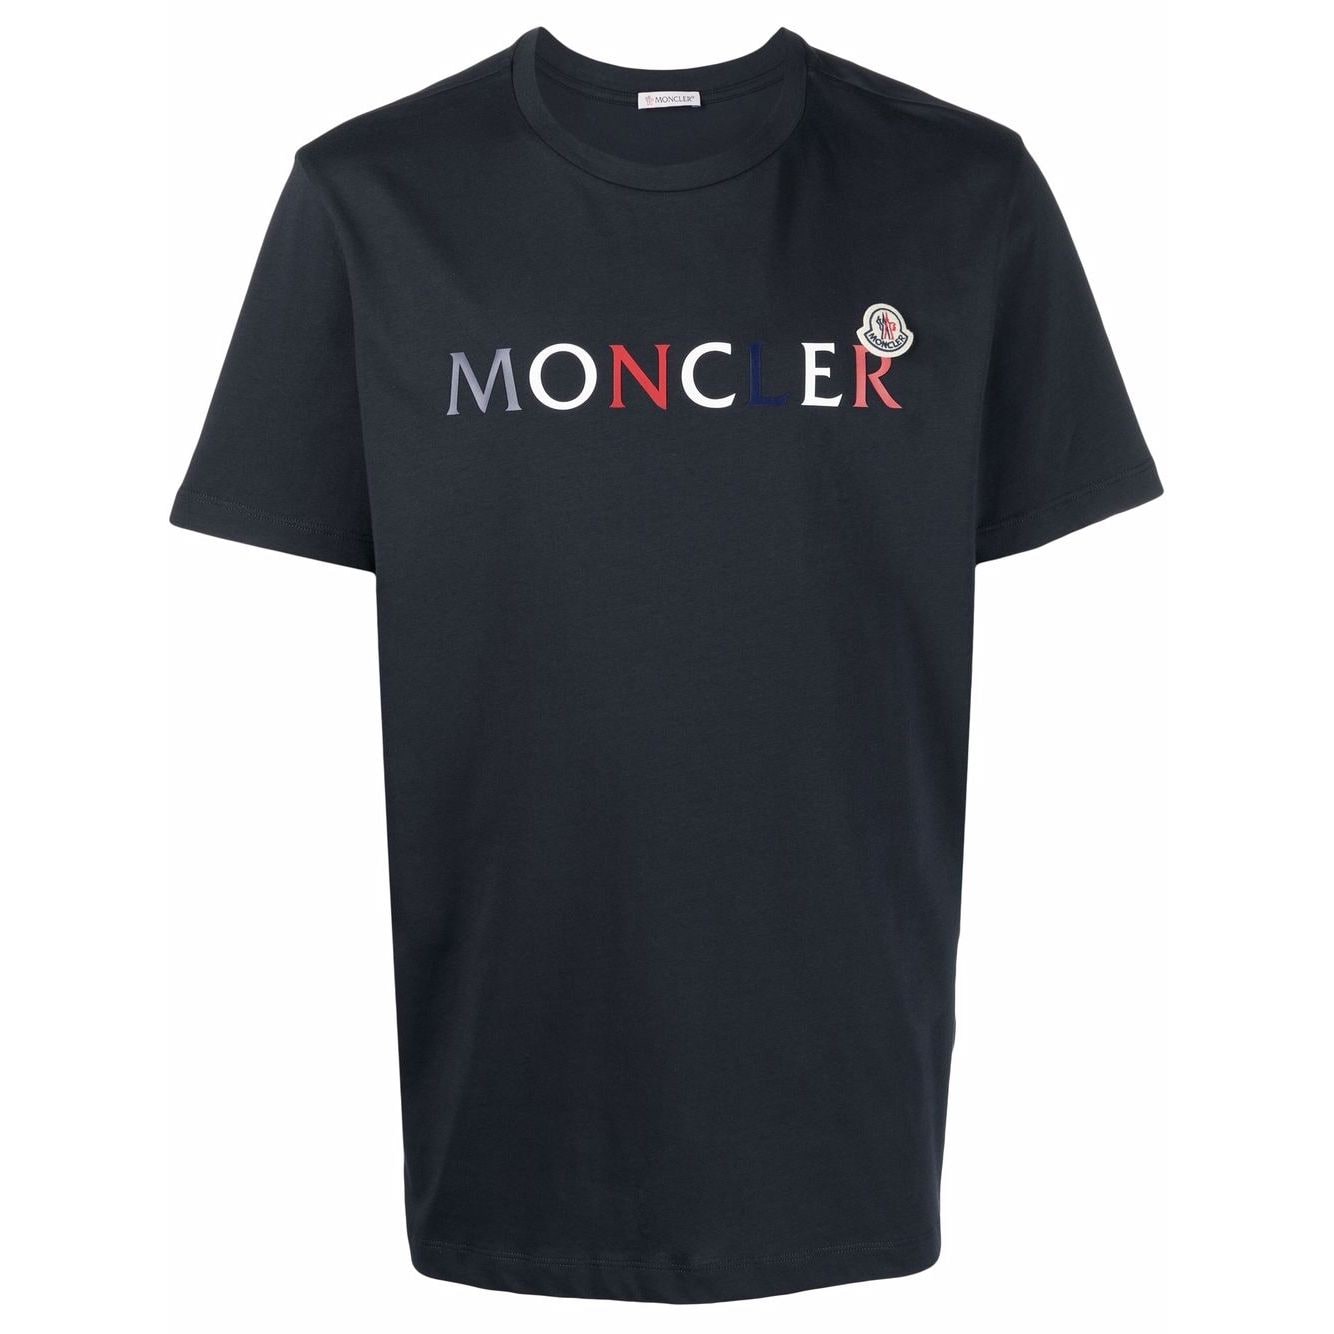 美品 モンクレール 23SS ロゴレタリング クルーネック 半袖Tシャツ メンズ 赤 M MONCLER